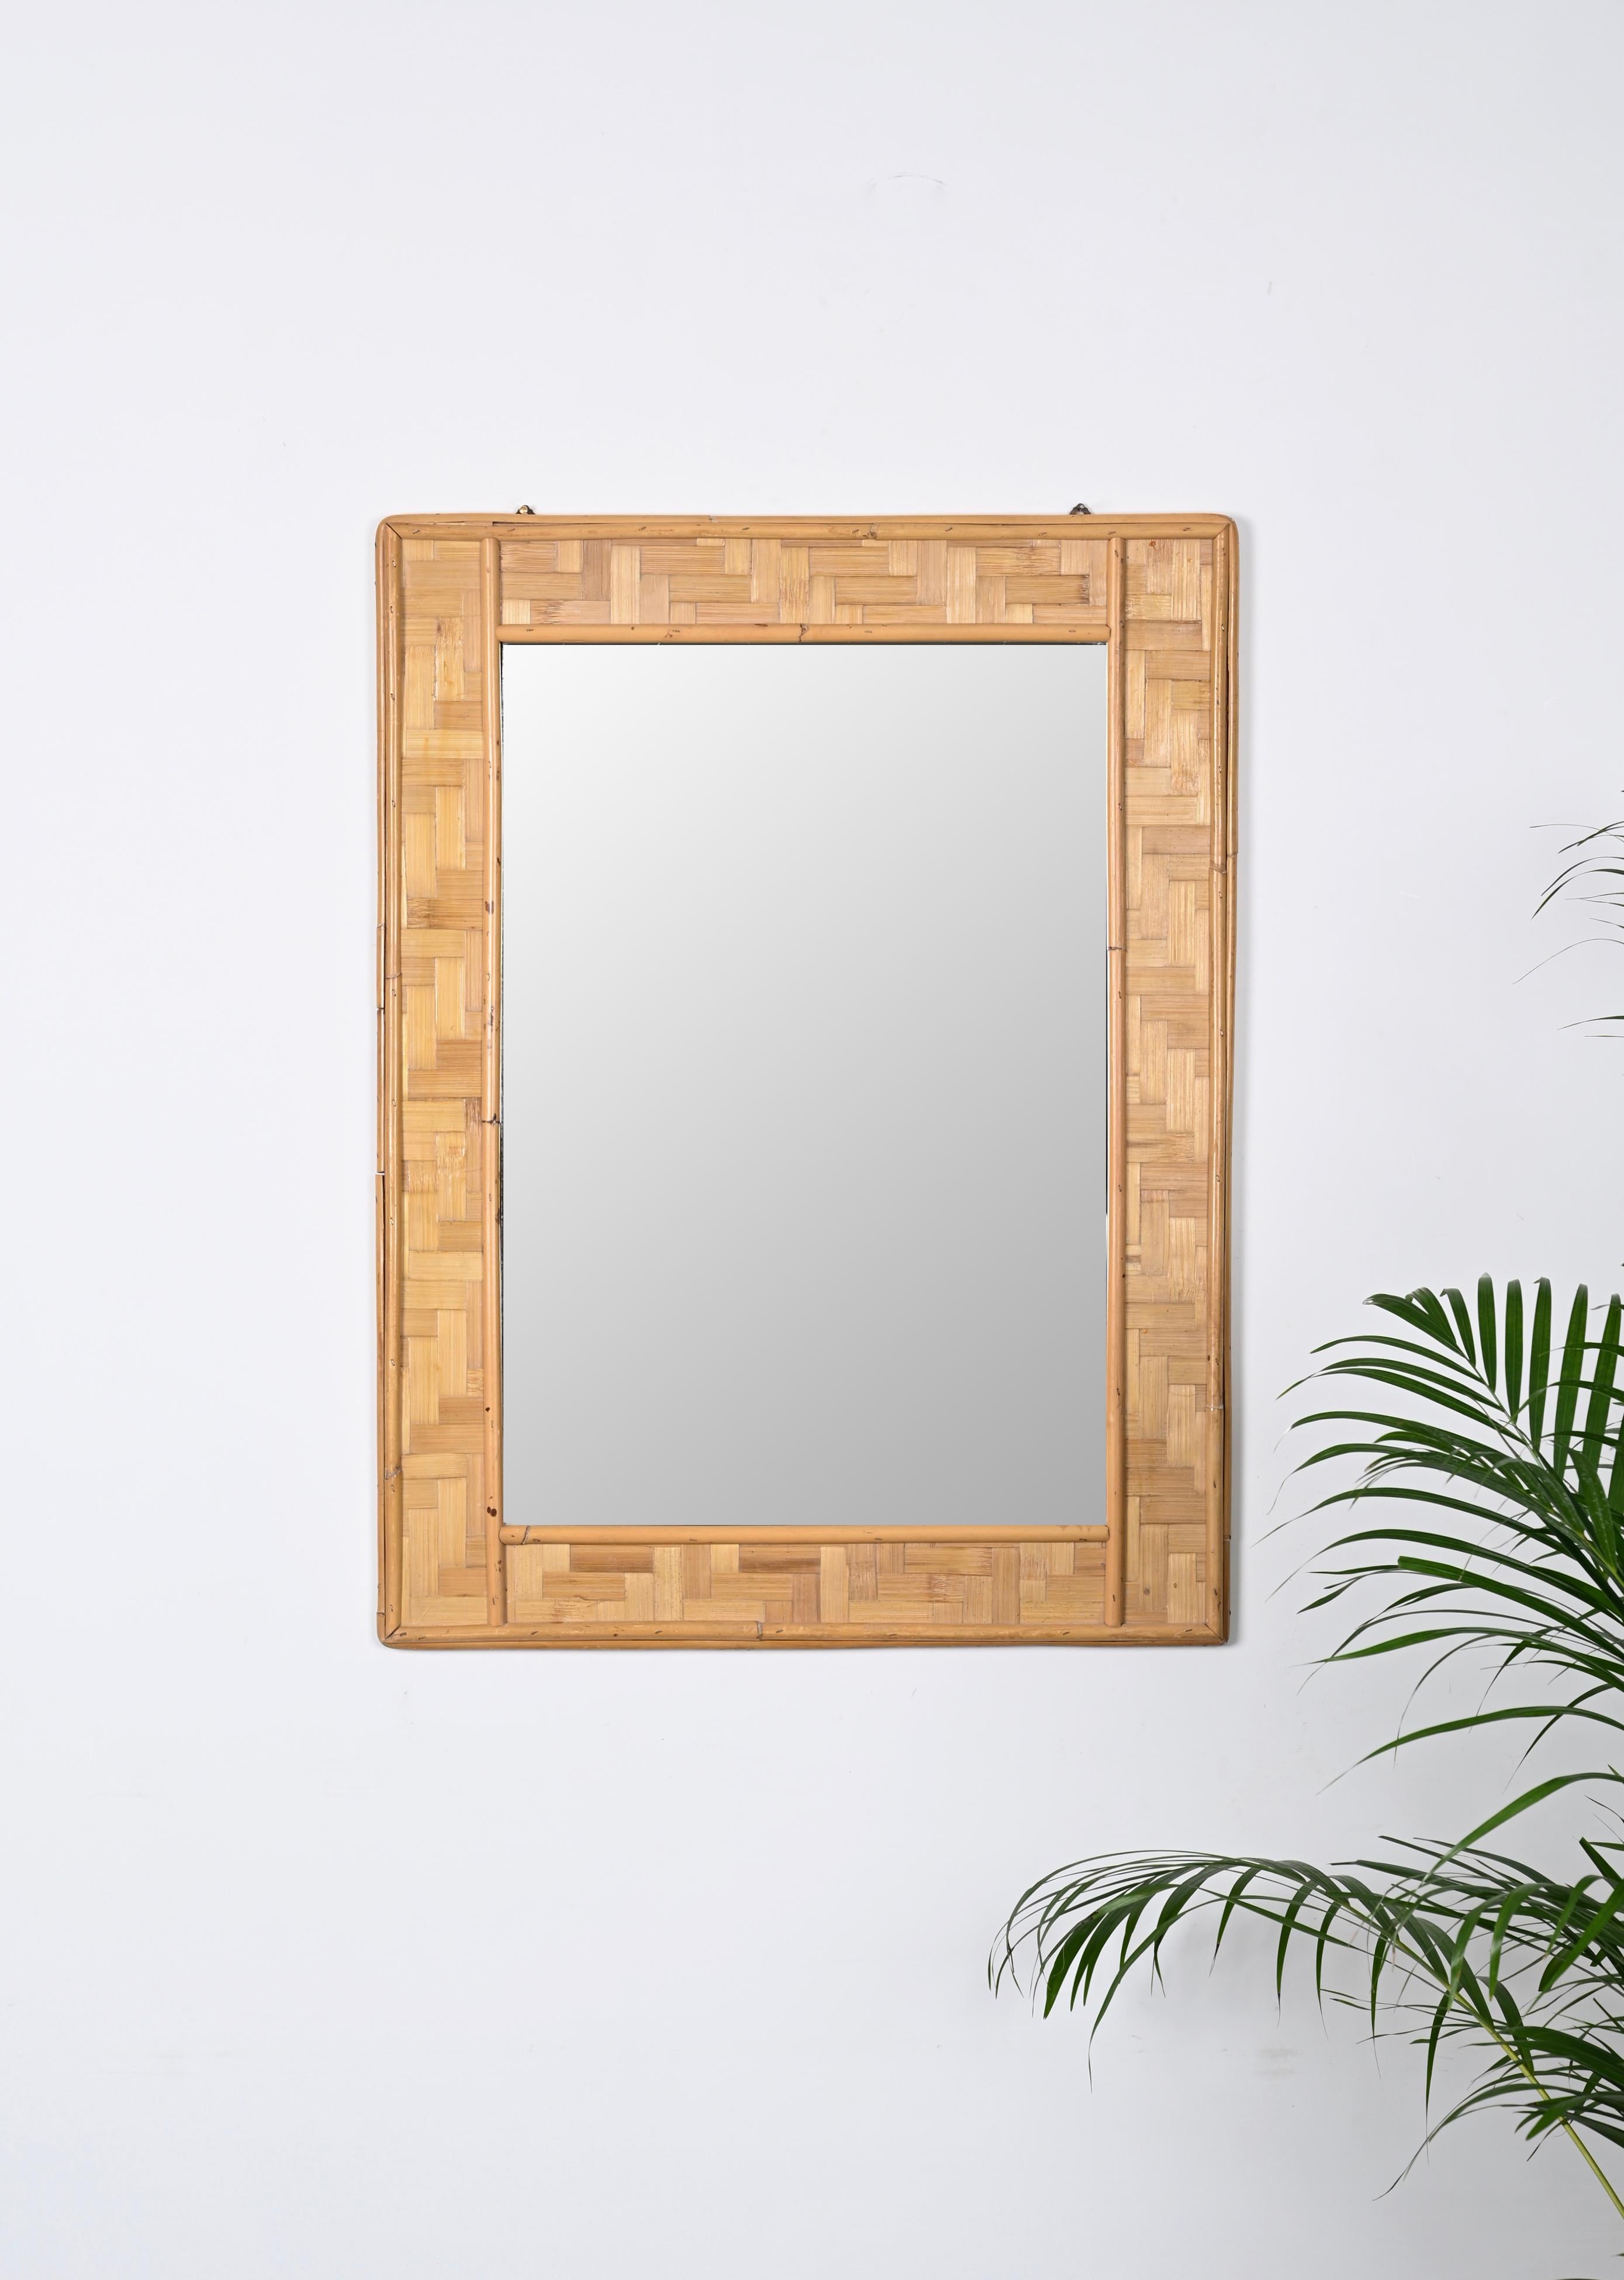 Etonnante table rectangulaire en bambou et tressage du milieu du siècle  miroir en rotin. Cette pièce fantastique a été conçue en Italie dans les années 1960.

Ce miroir est fantastique grâce à son fantastique cadre, fait de lignes droites données